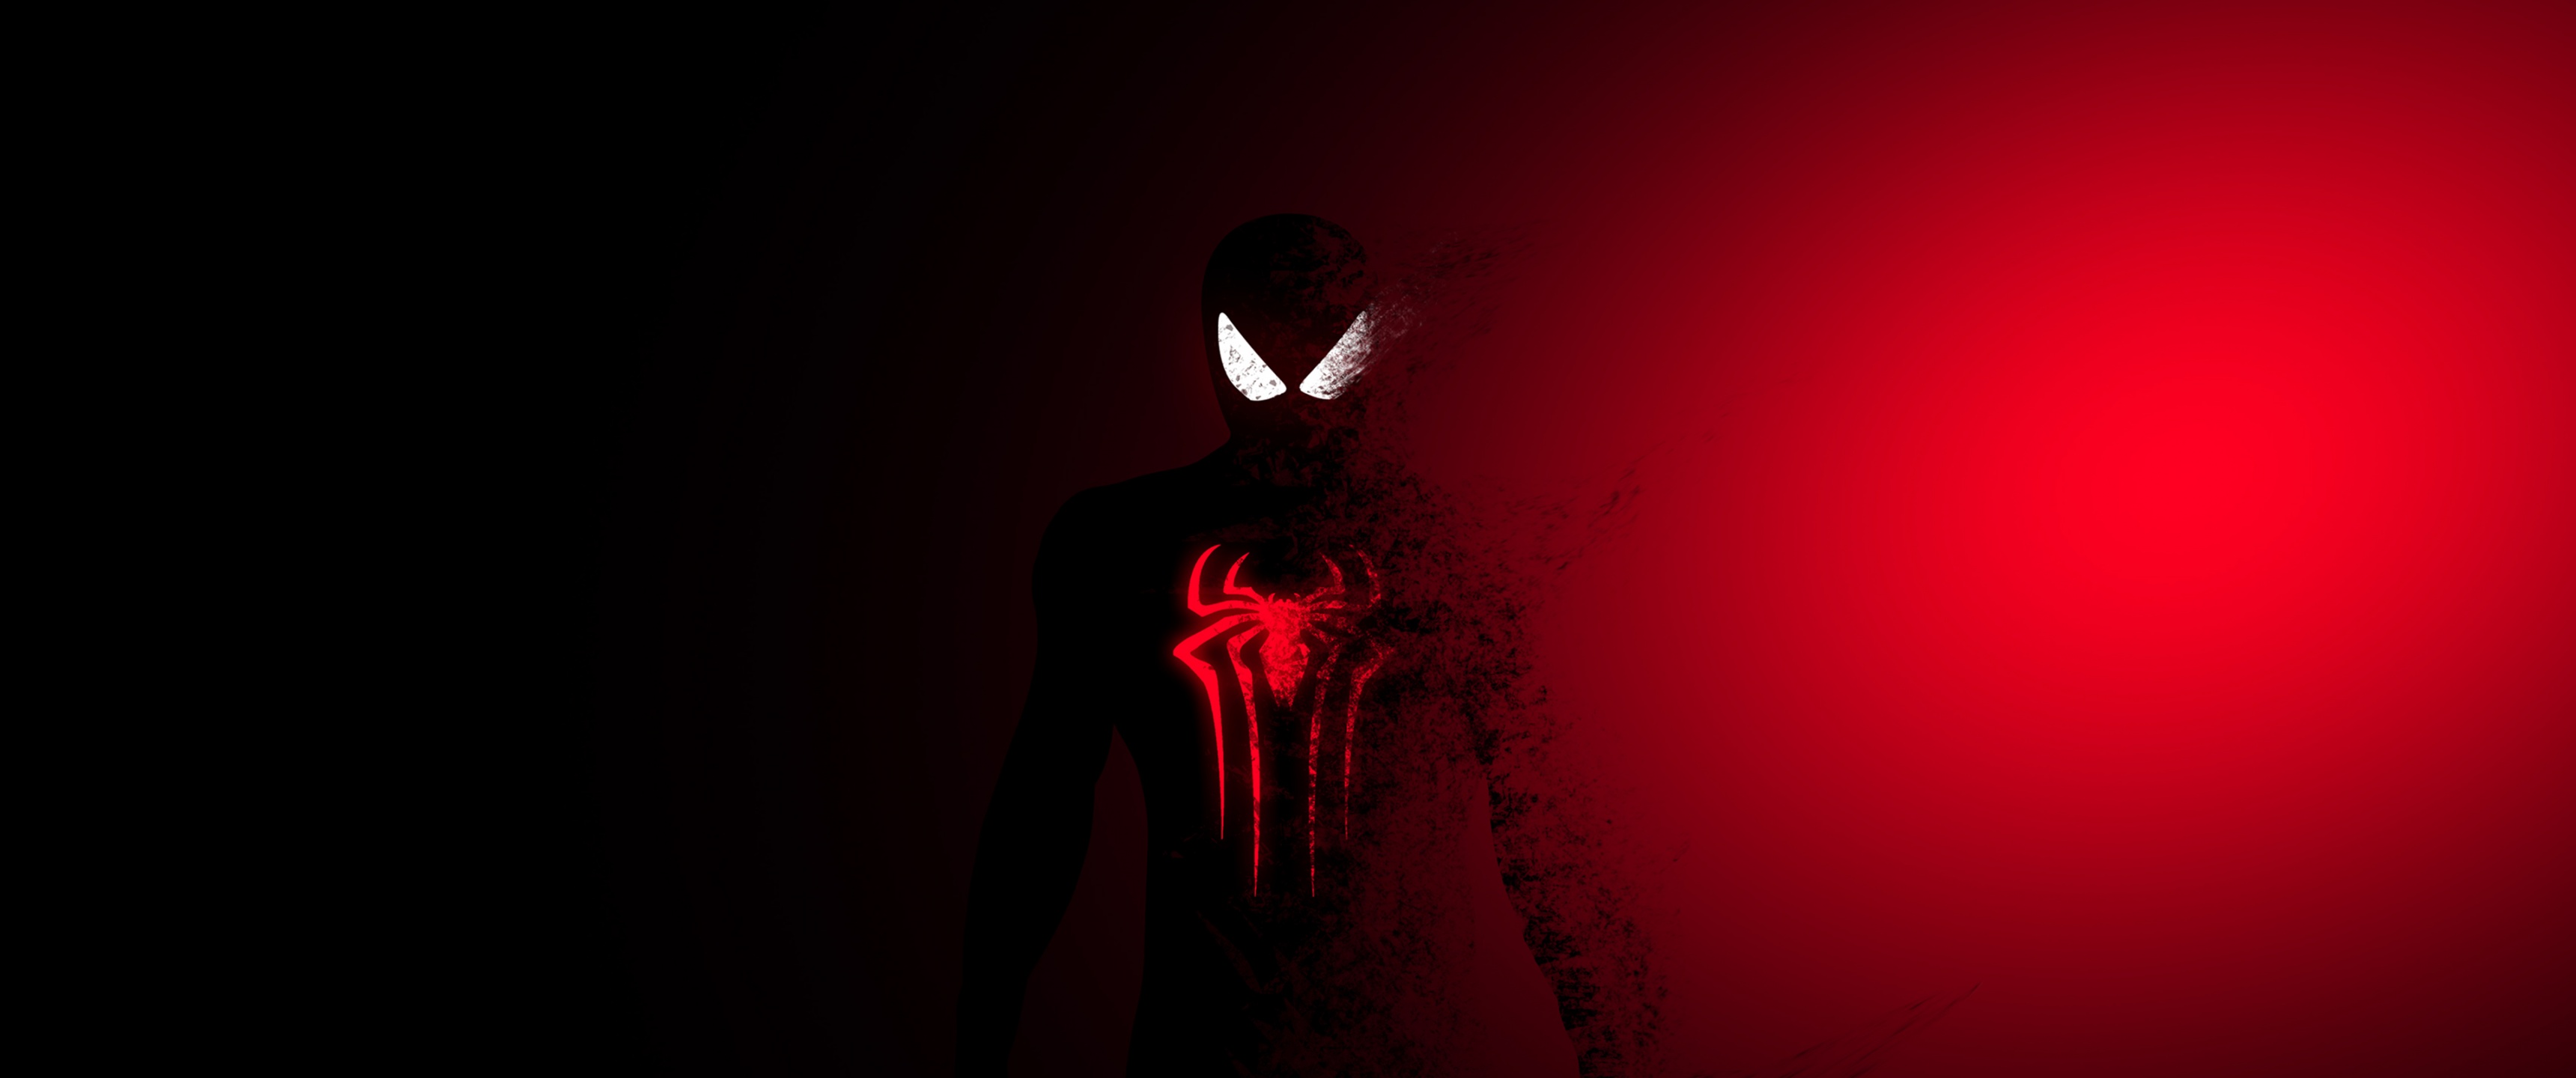 Nếu bạn là fan của siêu anh hùng Spider-Man, hình ảnh này sẽ khiến bạn chao đảo. Nhân vật nhũy tuyệt vời này đang làm nhiệm vụ cứu thế giới như thường lệ. Hãy đến và xem hành động của anh ta.